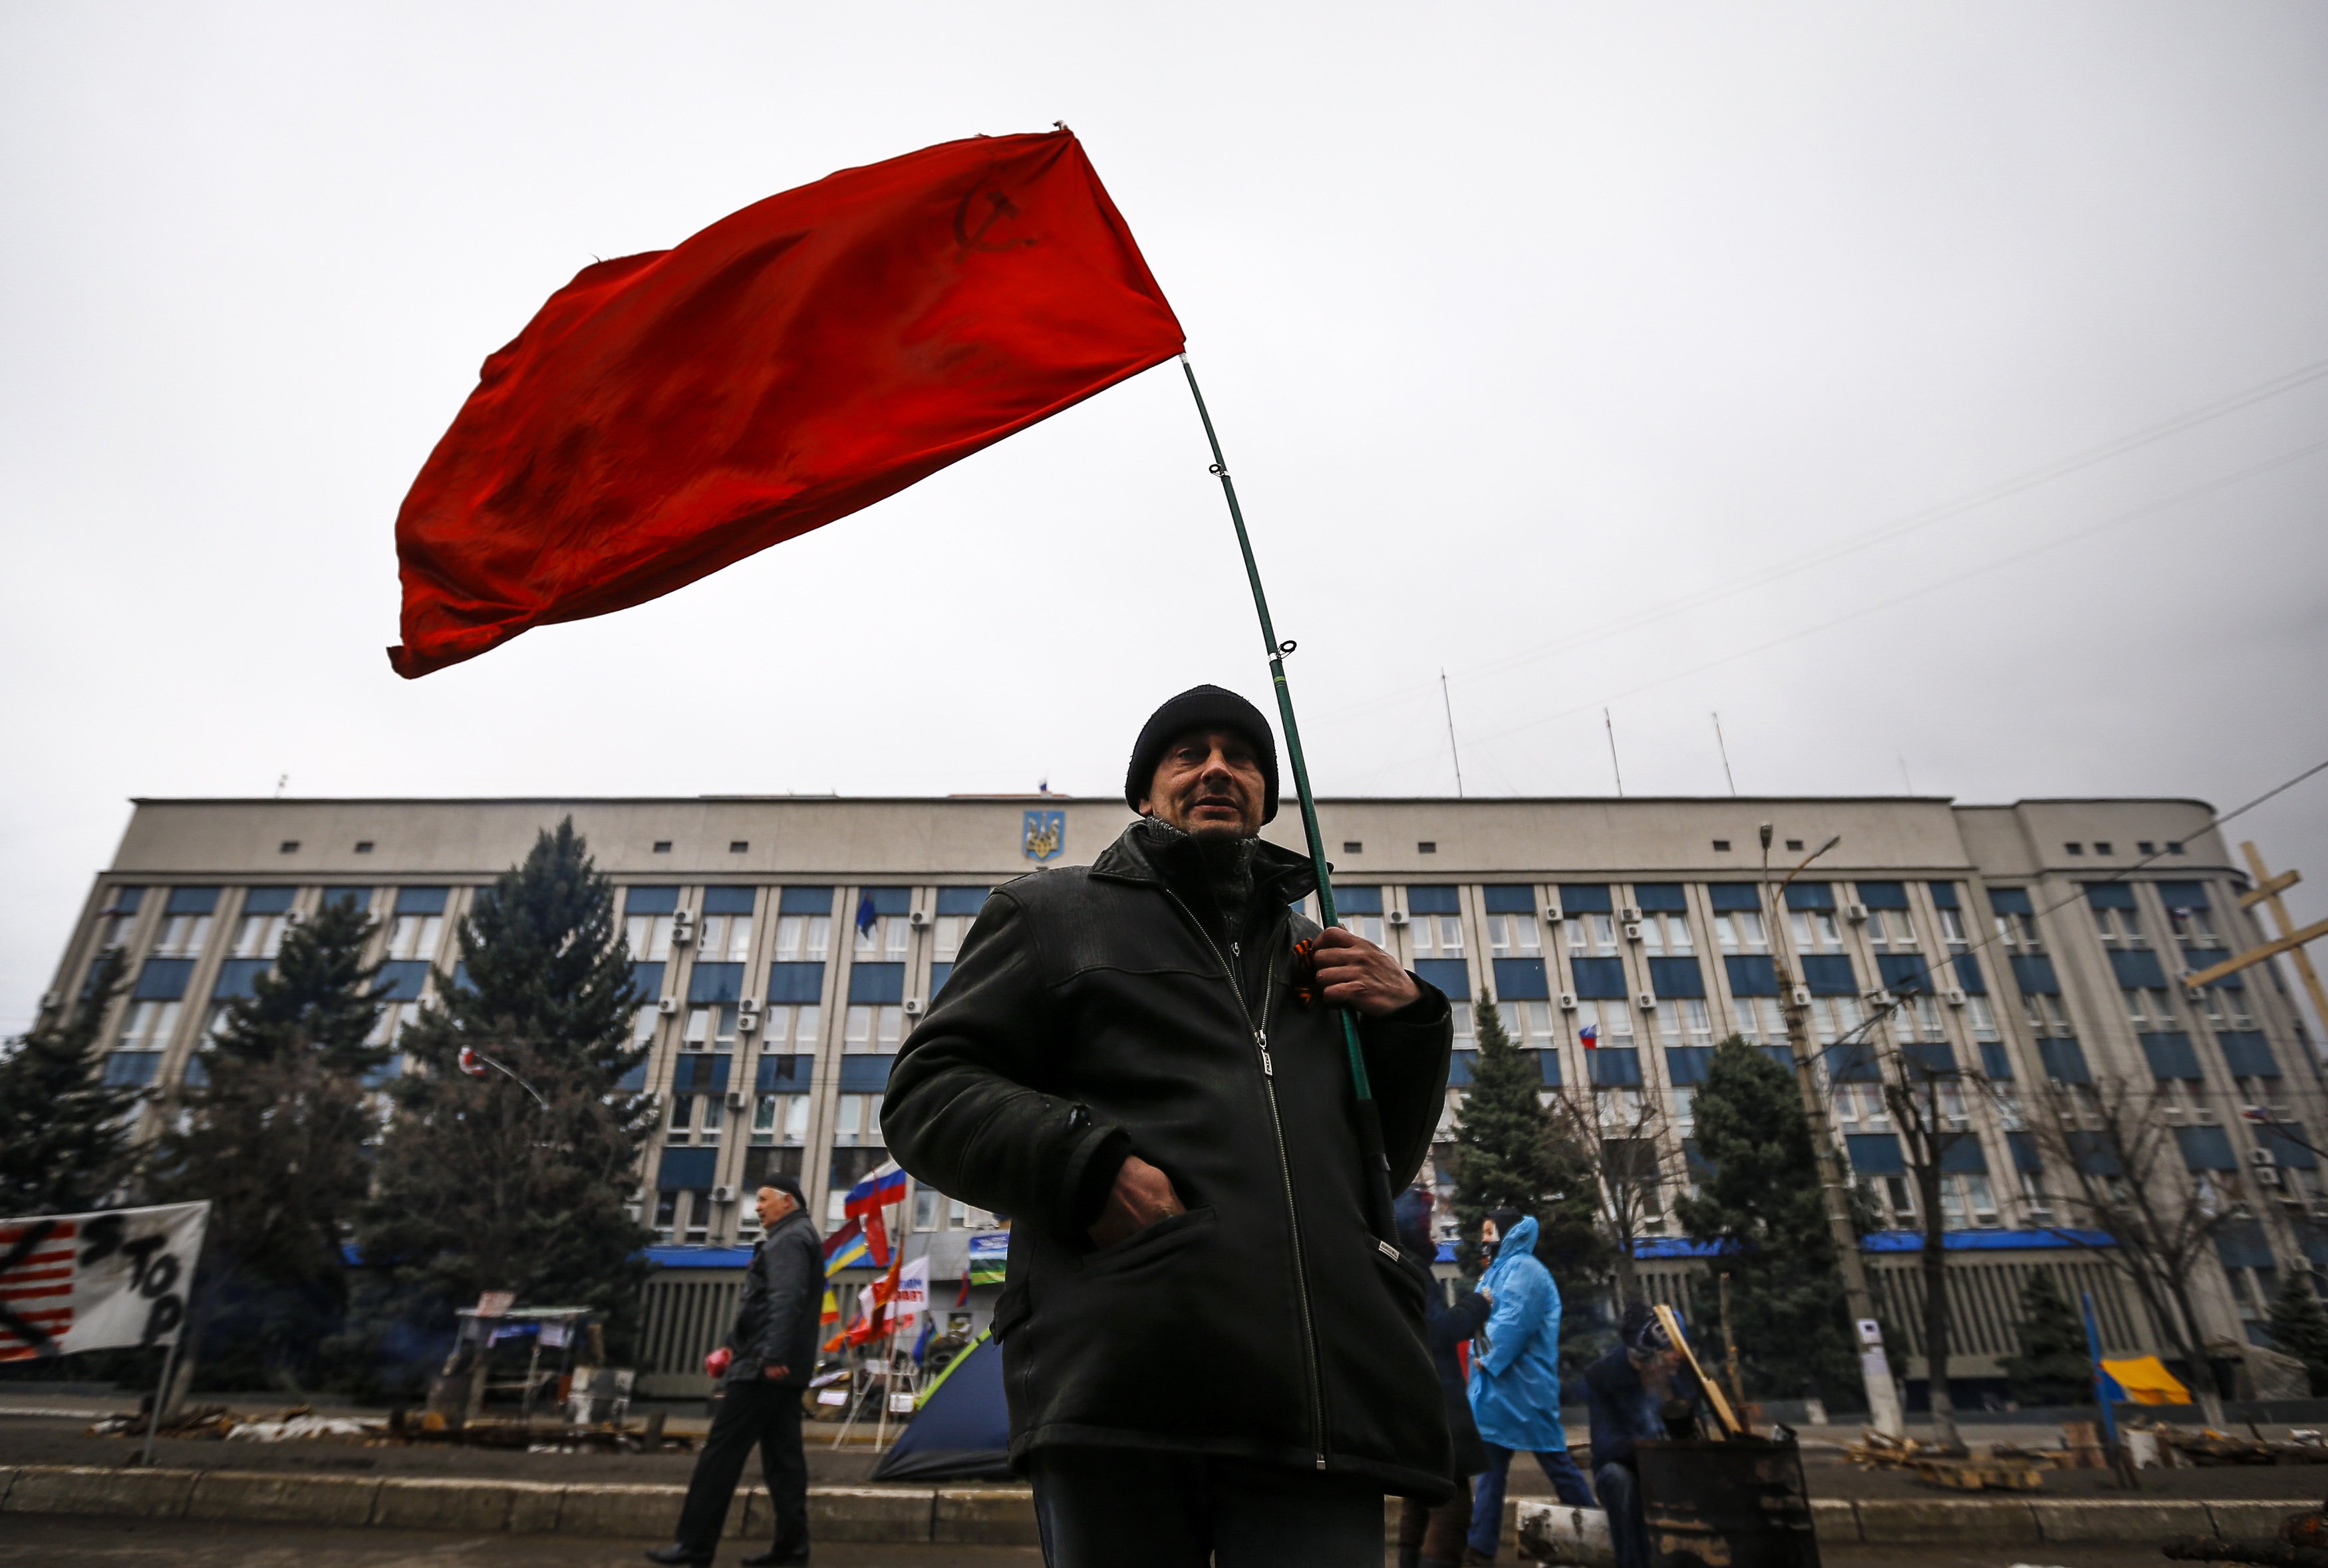 Ουκρανία: Φόβοι για αιματοχυσία και απειλές για εκκαθαριστικές επιχειρήσεις  κατά των Ρώσων